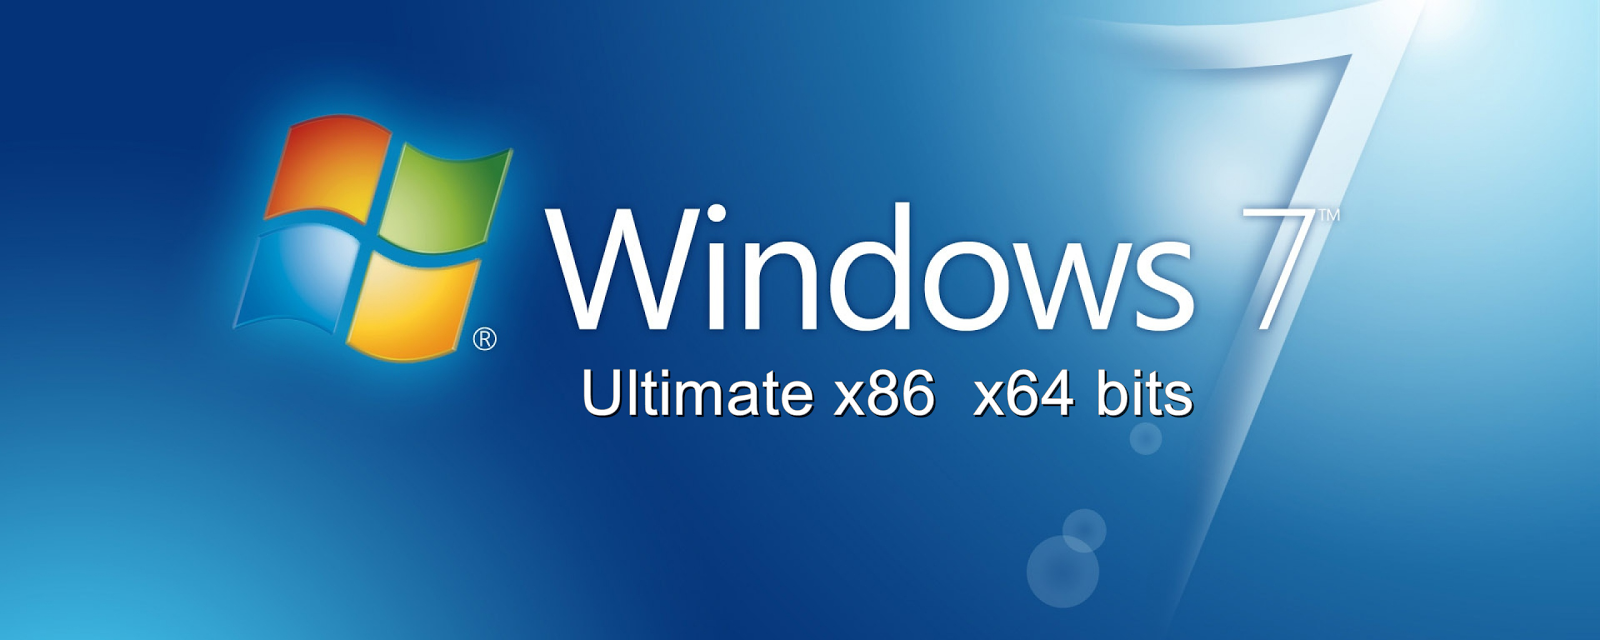 windows 7 ultimate 32 bit